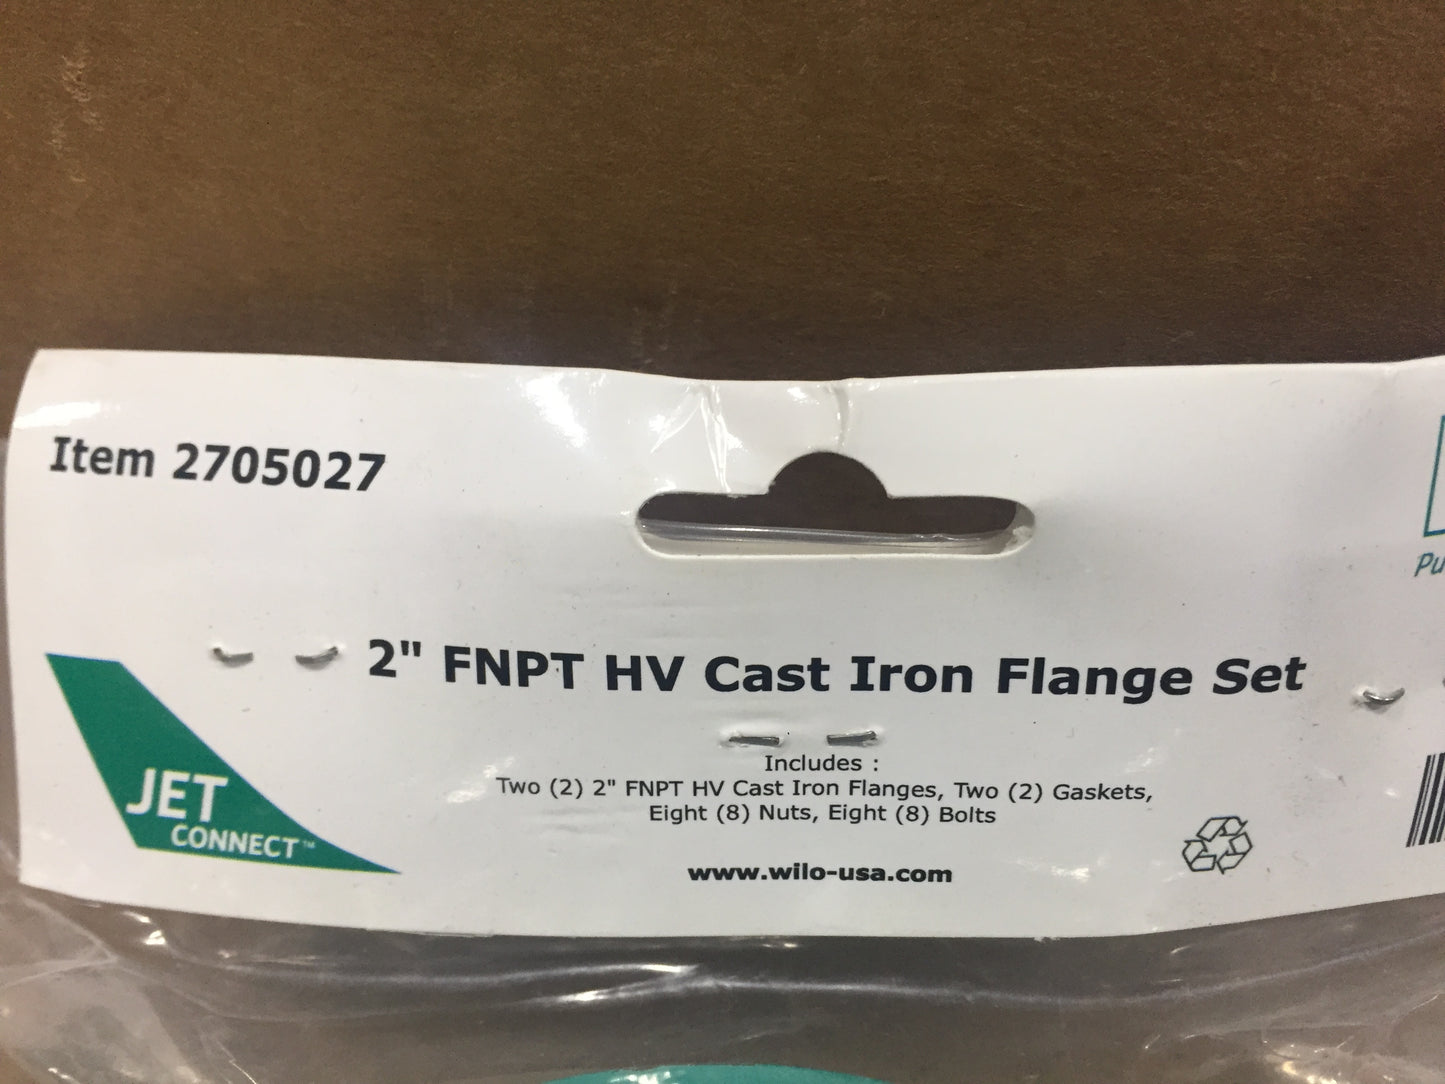 2" FNPT HV CAST IRON FLANGE SET